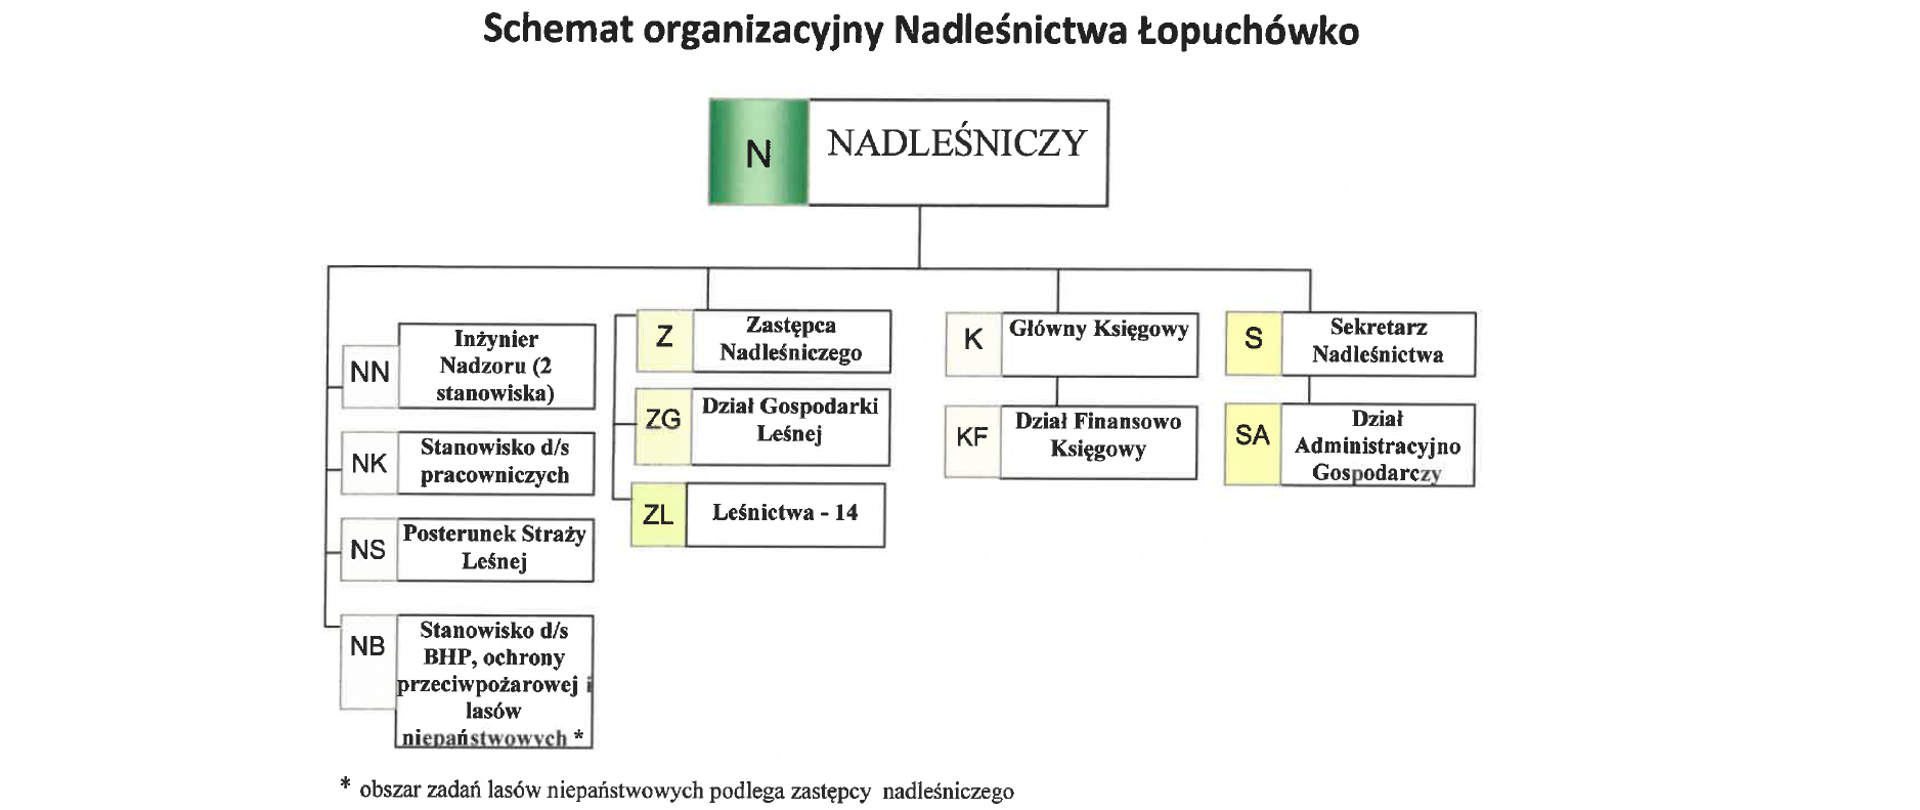 Schemat organizacyjny Nadleśnictwa Łopuchówko